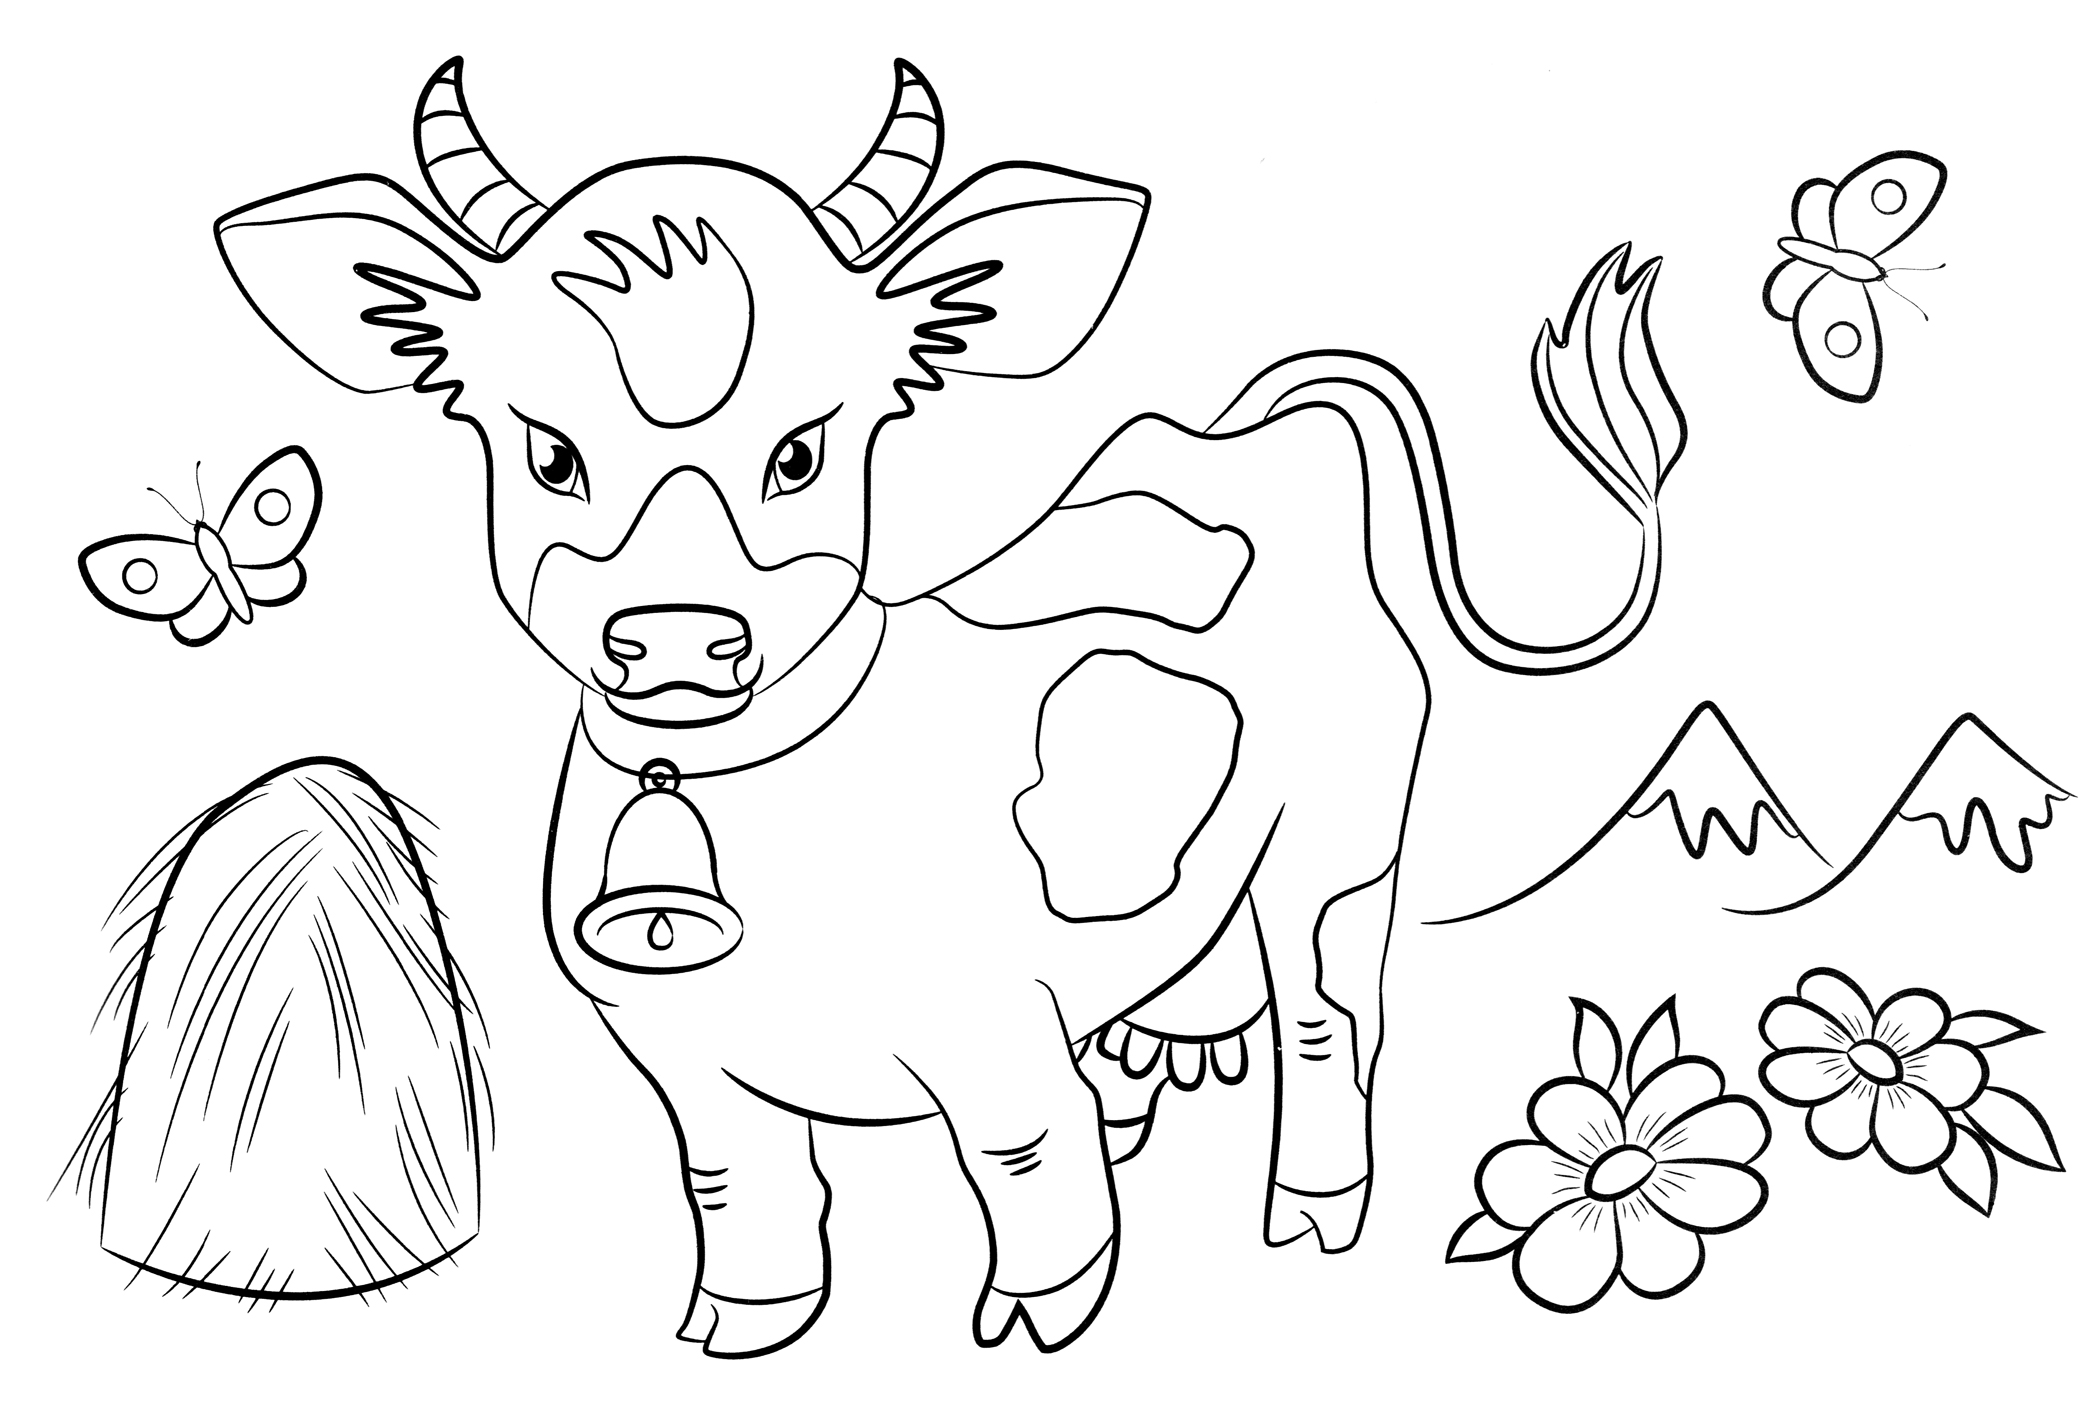 Распечатать коровку раскраску. Коровка. Раскраска. Коровка раскраска печать. Сено раскраска для детей. Раскраска для малышей корова стог сена.